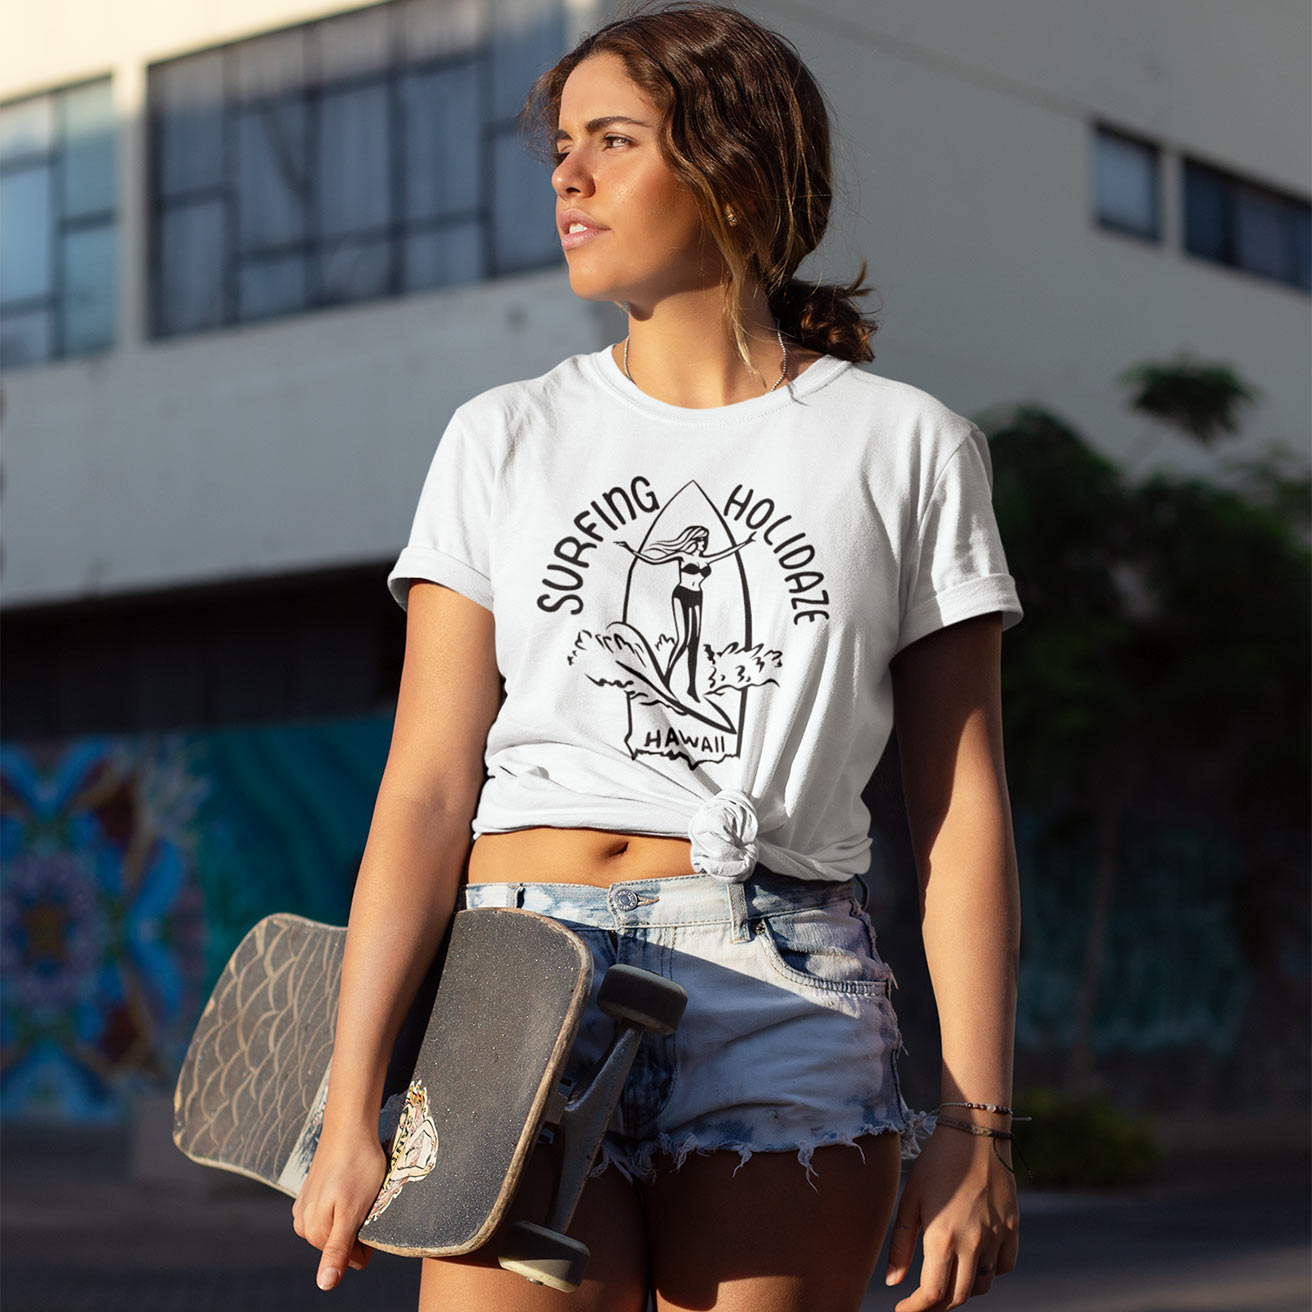 surf girl レディースサーフtシャツ